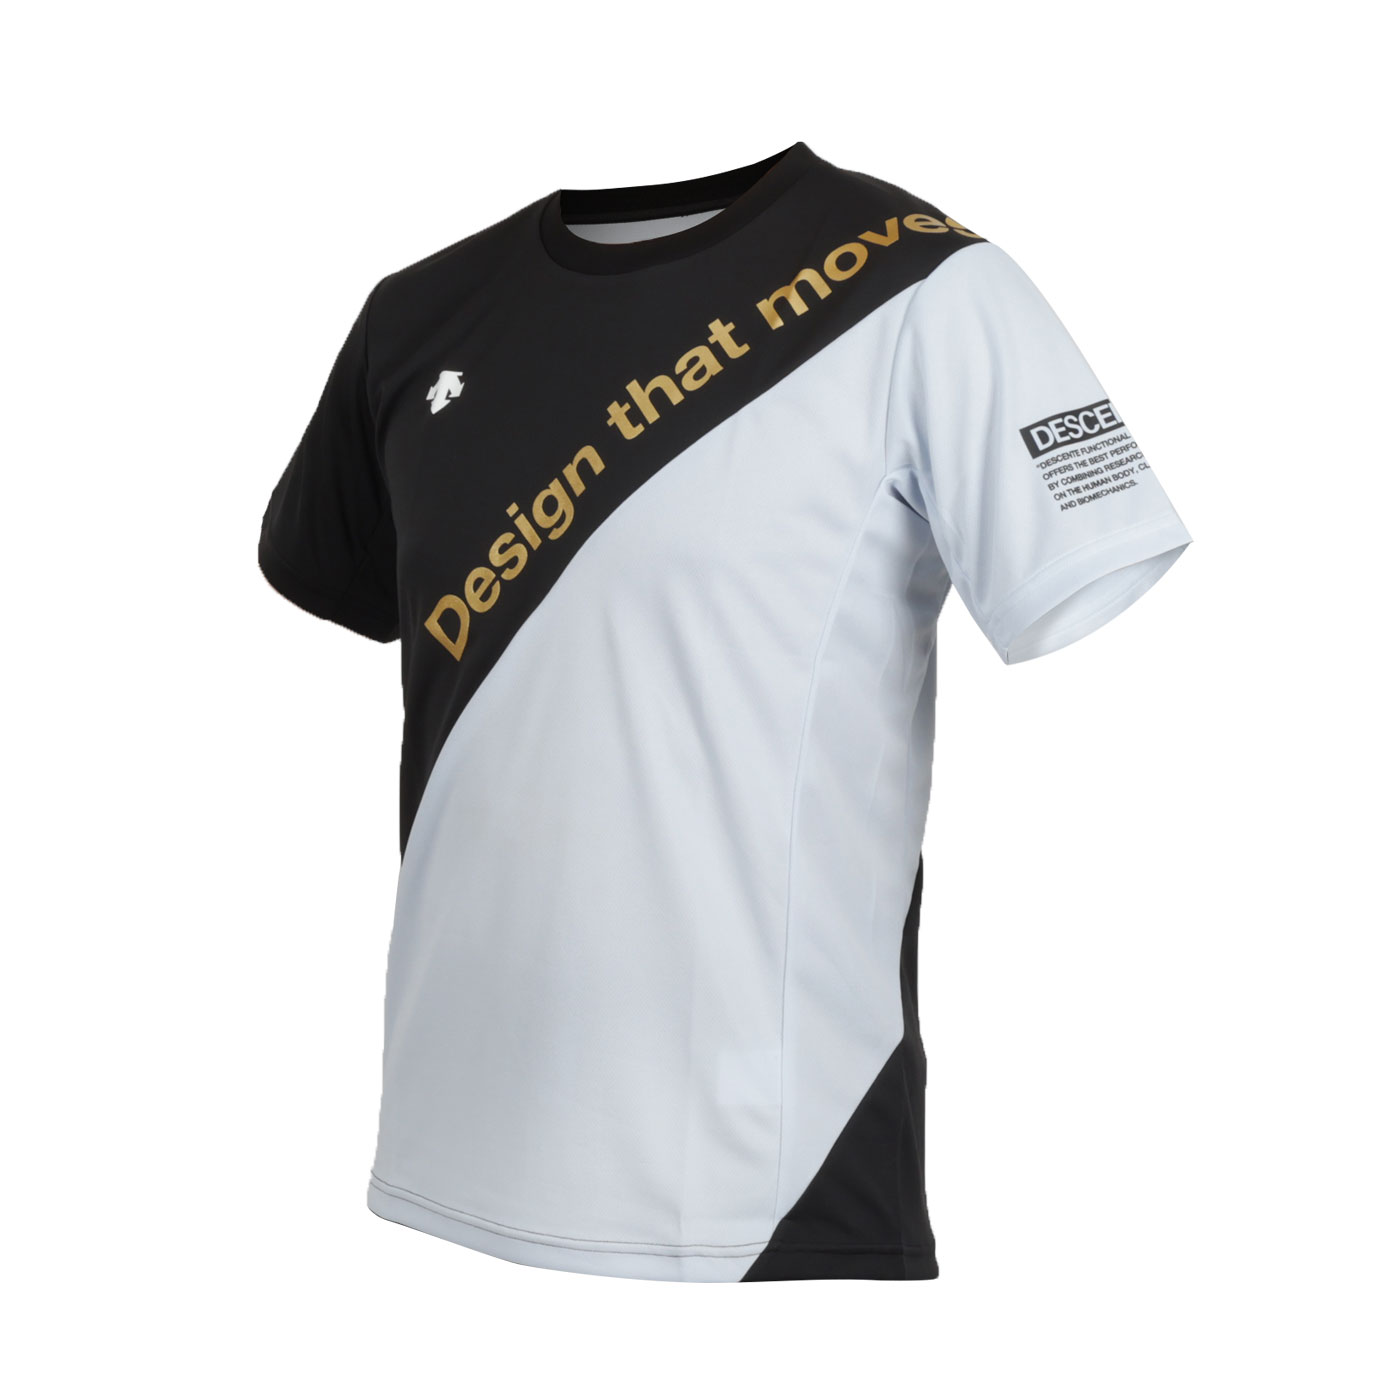 DESCENTE 男款排球短袖T恤  DVUVJA53T-BK - 黑淺水藍金